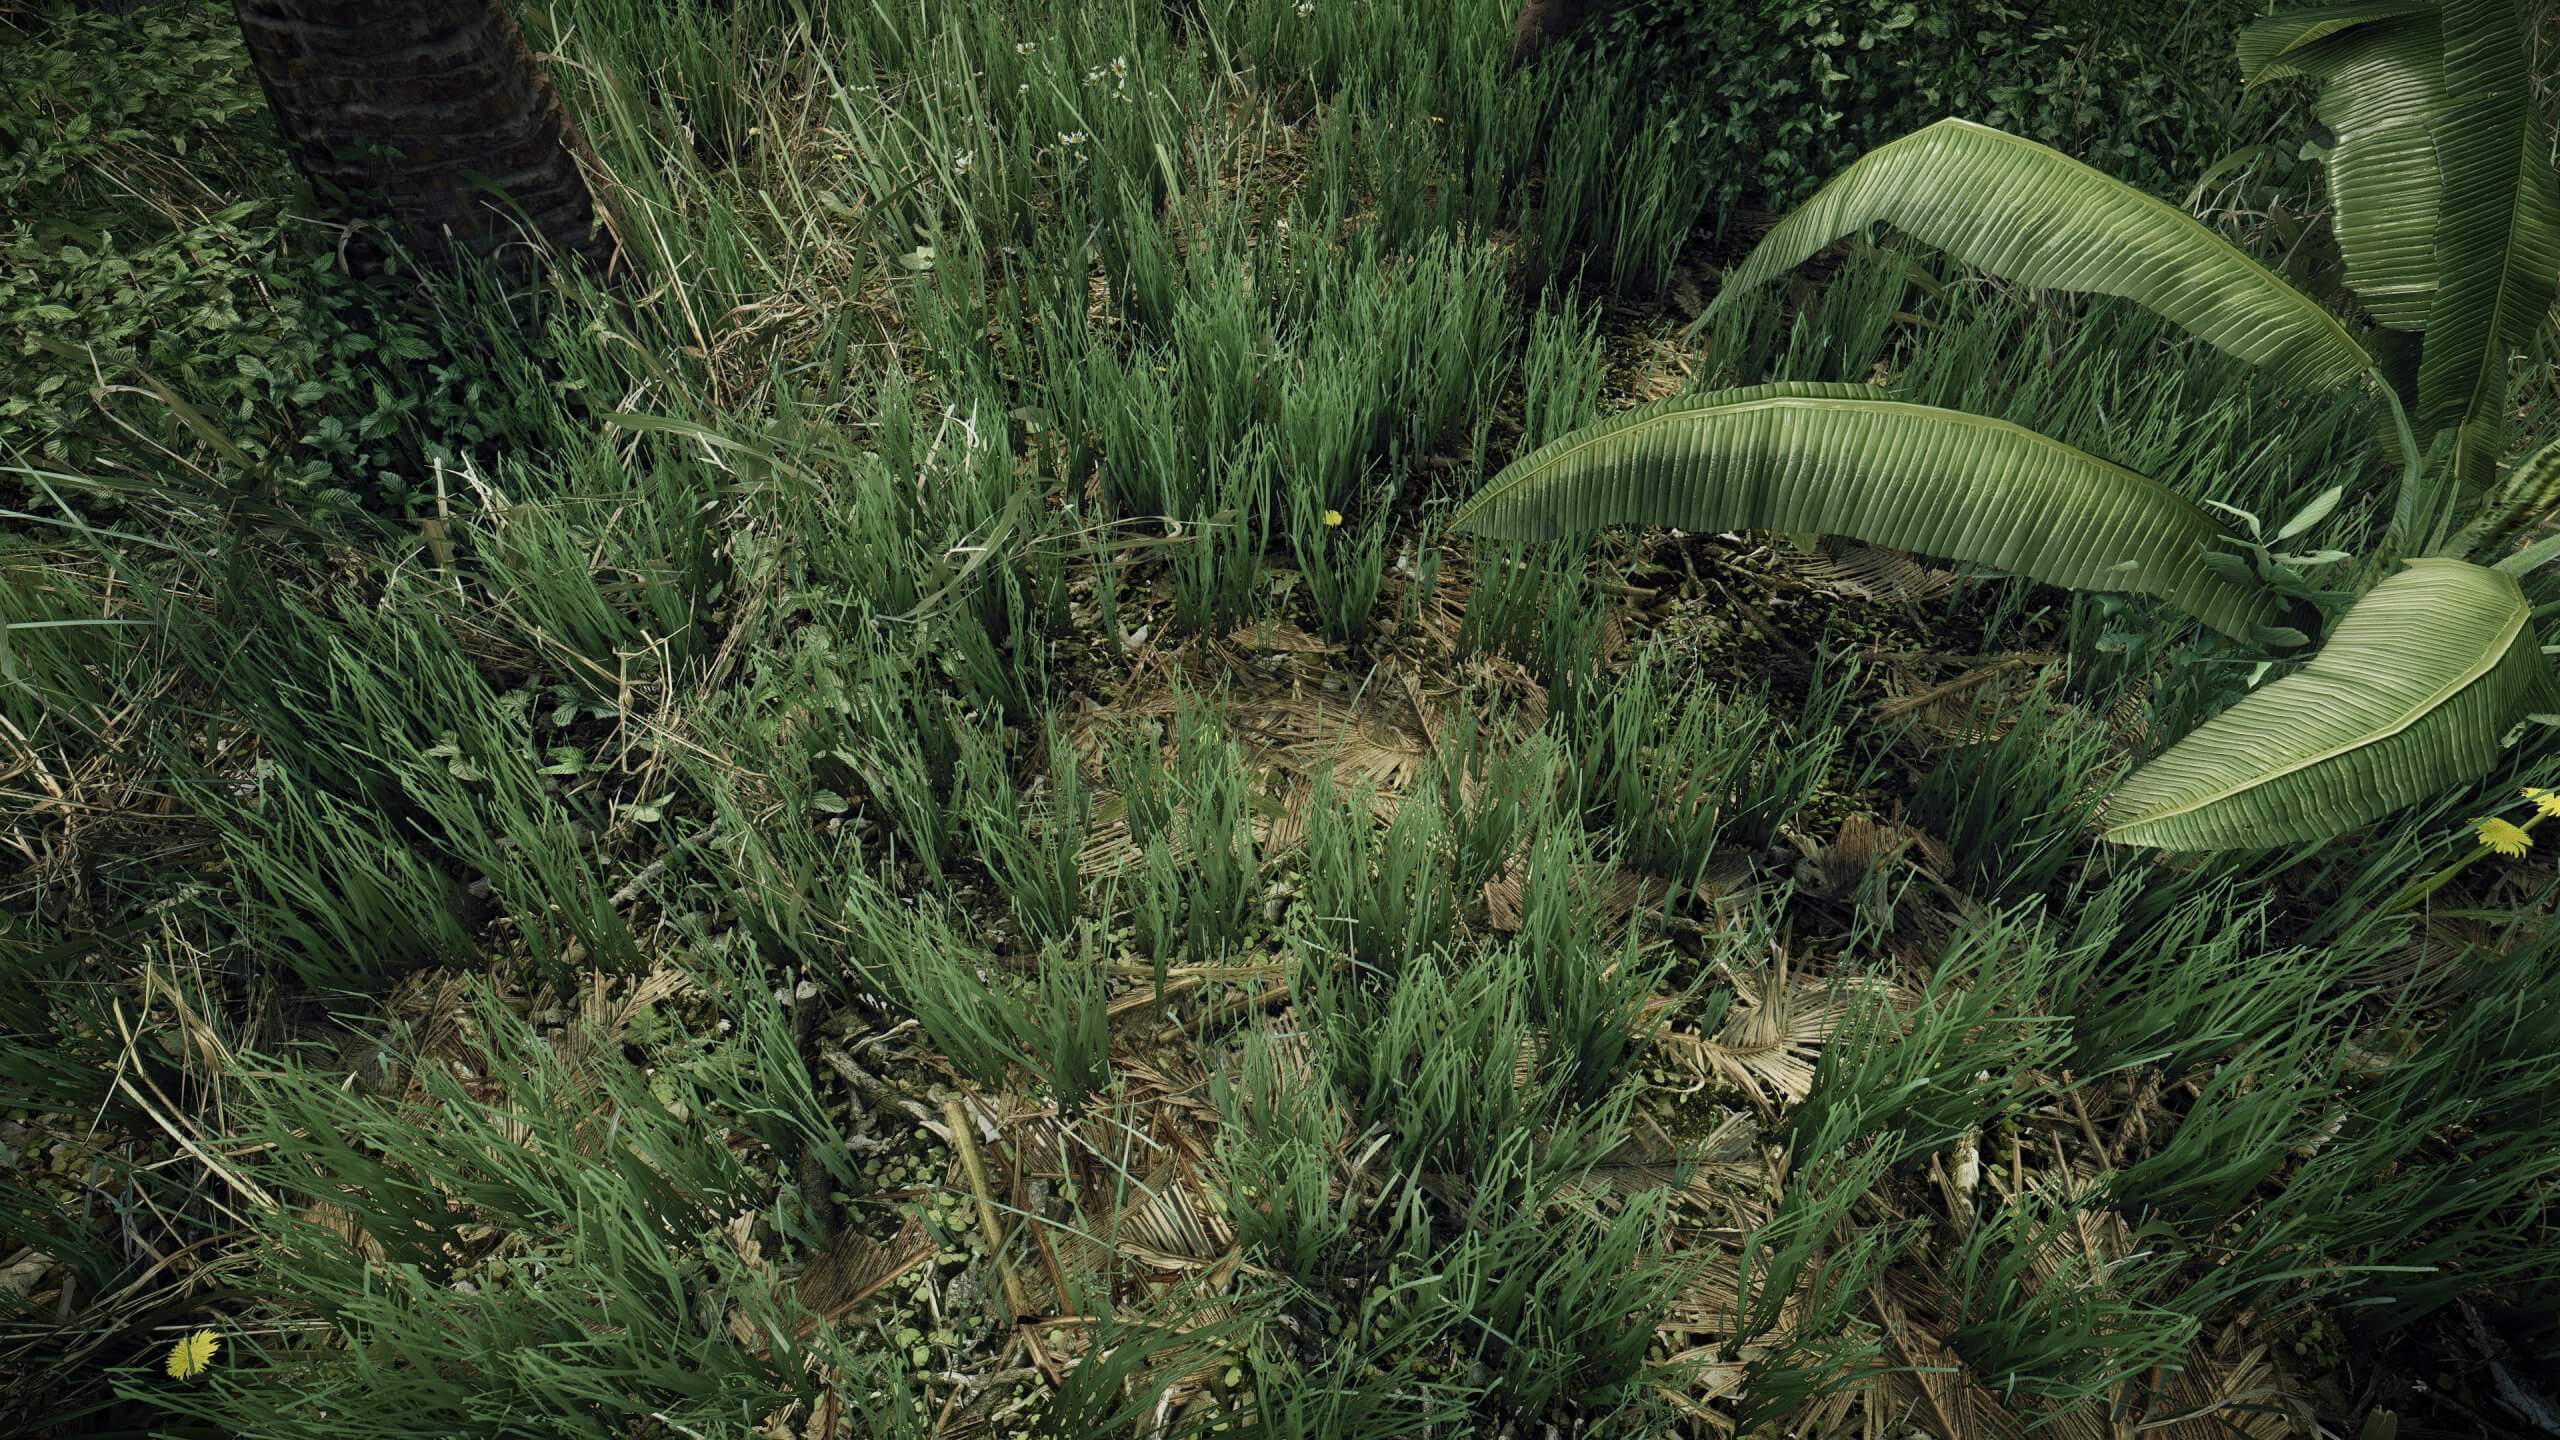 Crysis'in en iyi grafik modu Enhanced Edition'ın yeni güncellemesinden ilk görseller geldi